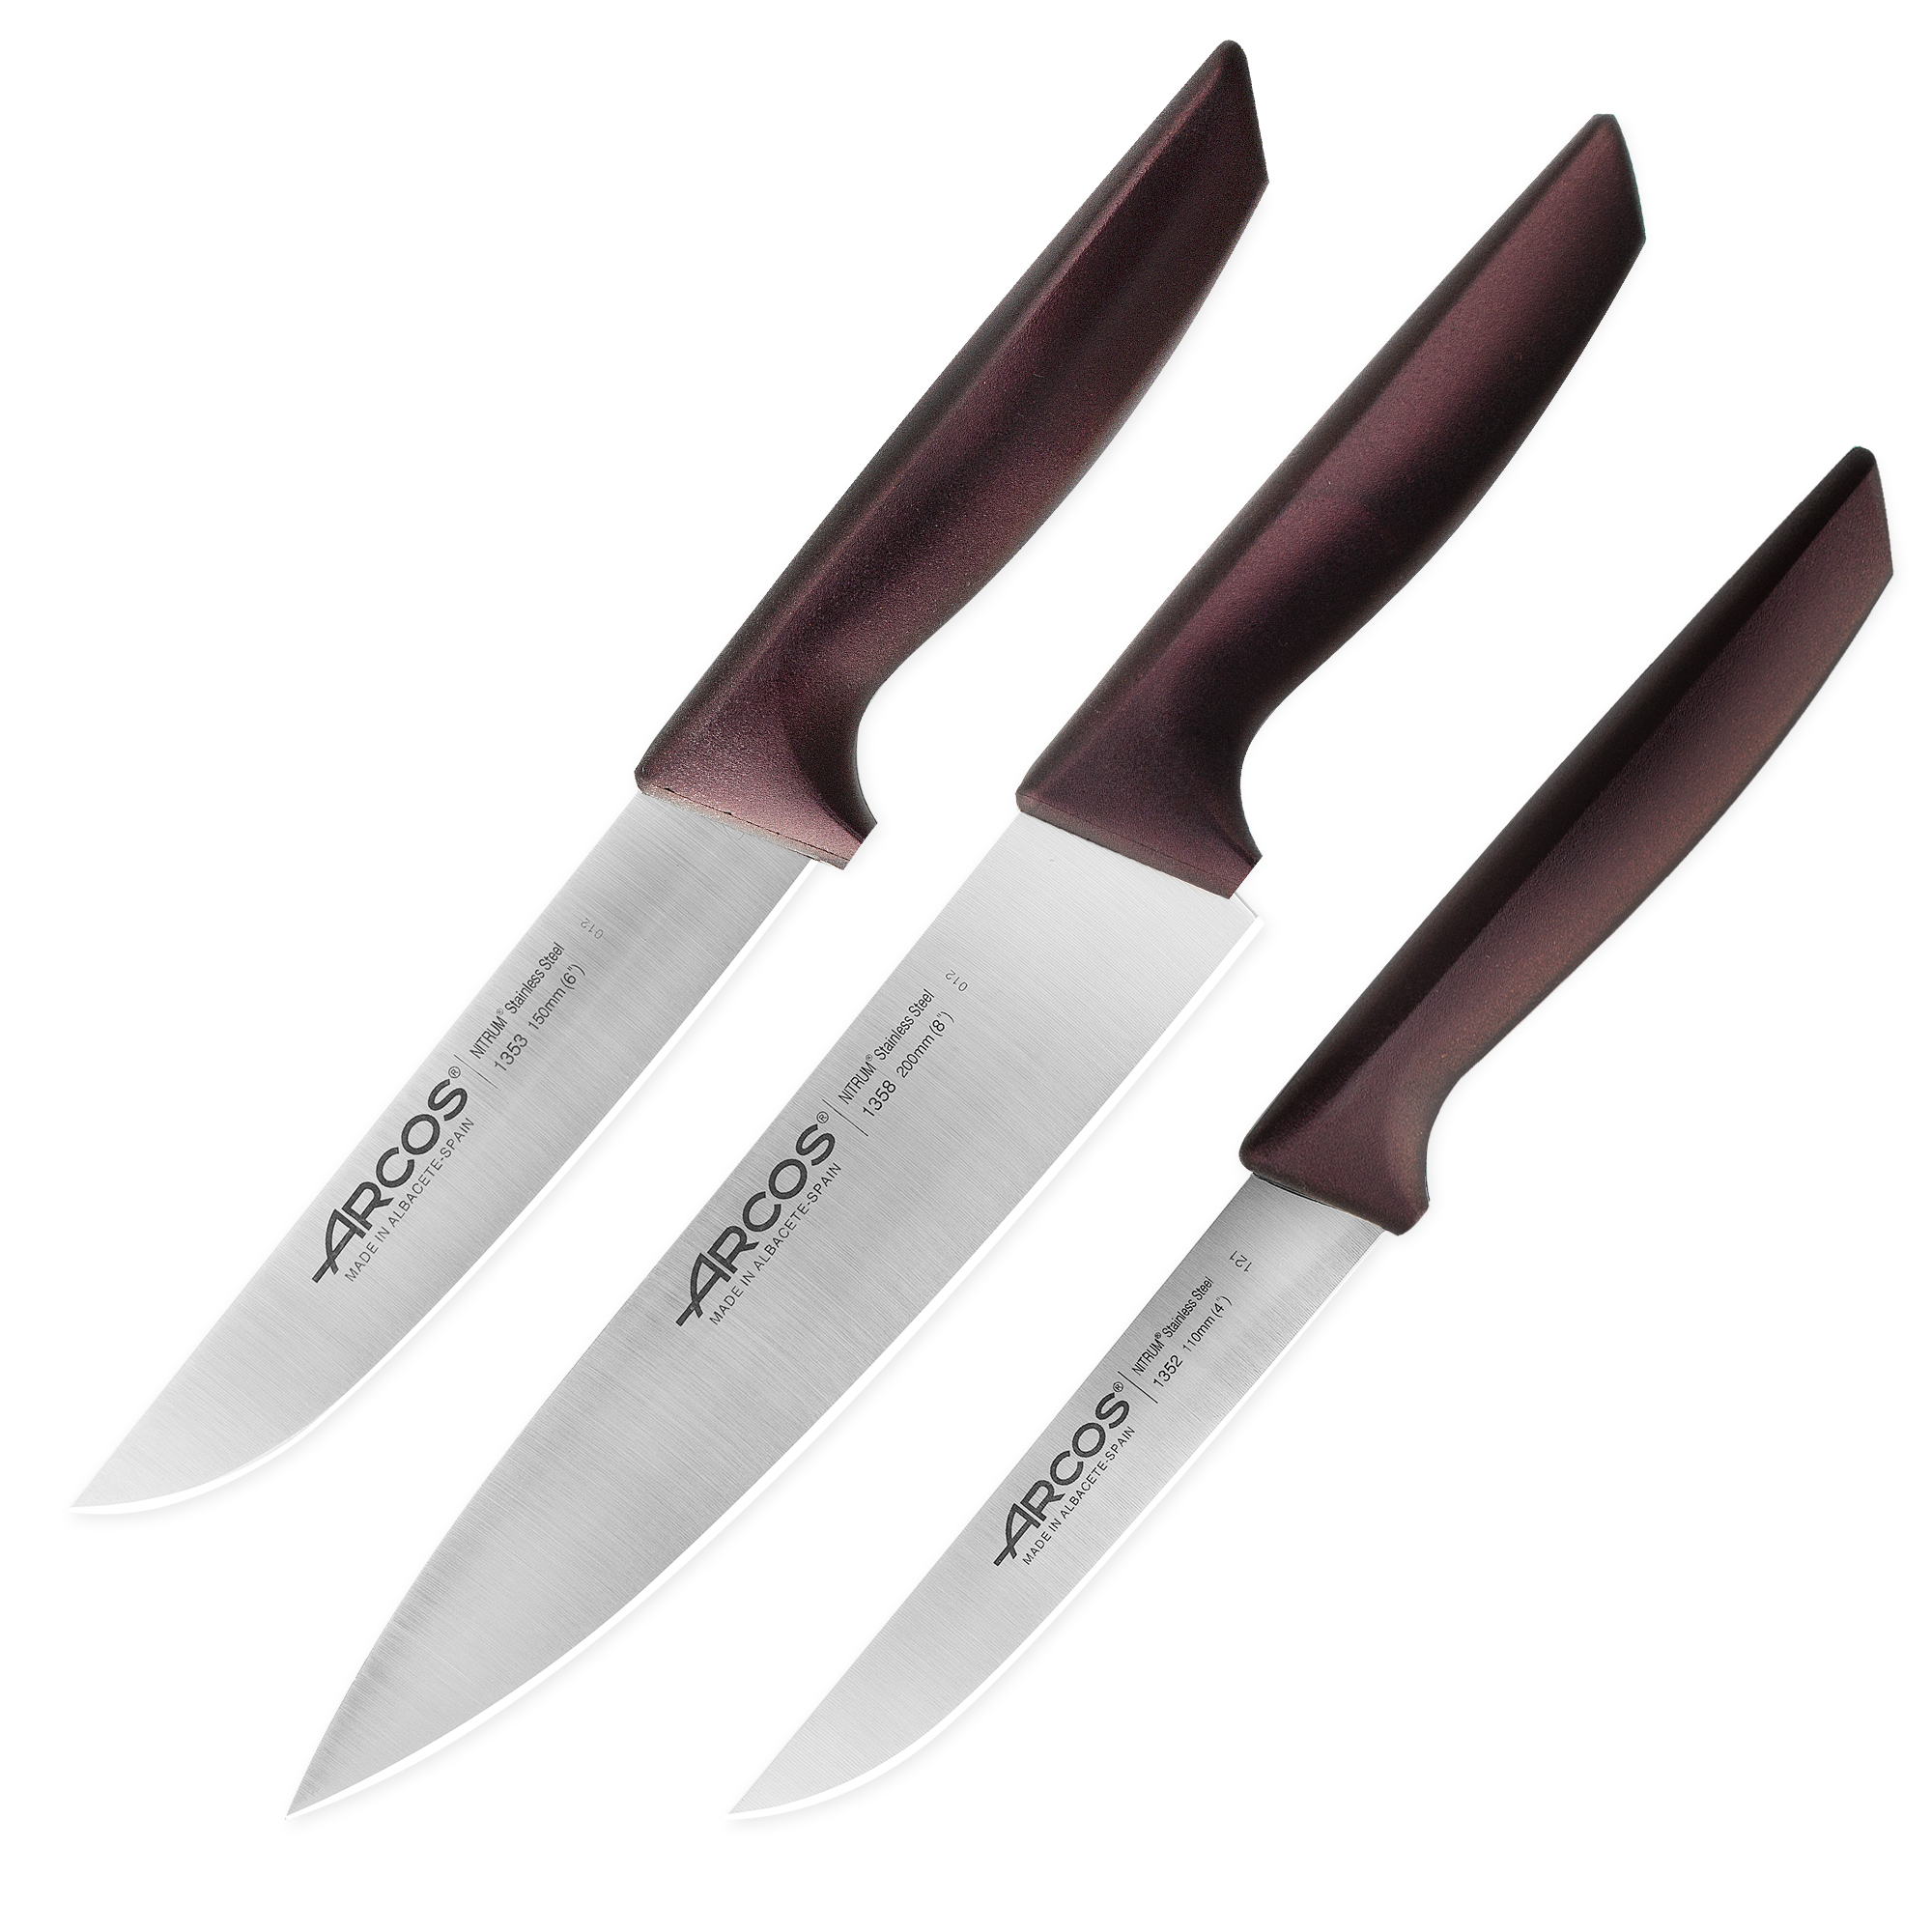 Набор кухонных ножей в коробке Niza Arcos, бордовая рукоять, 3 шт